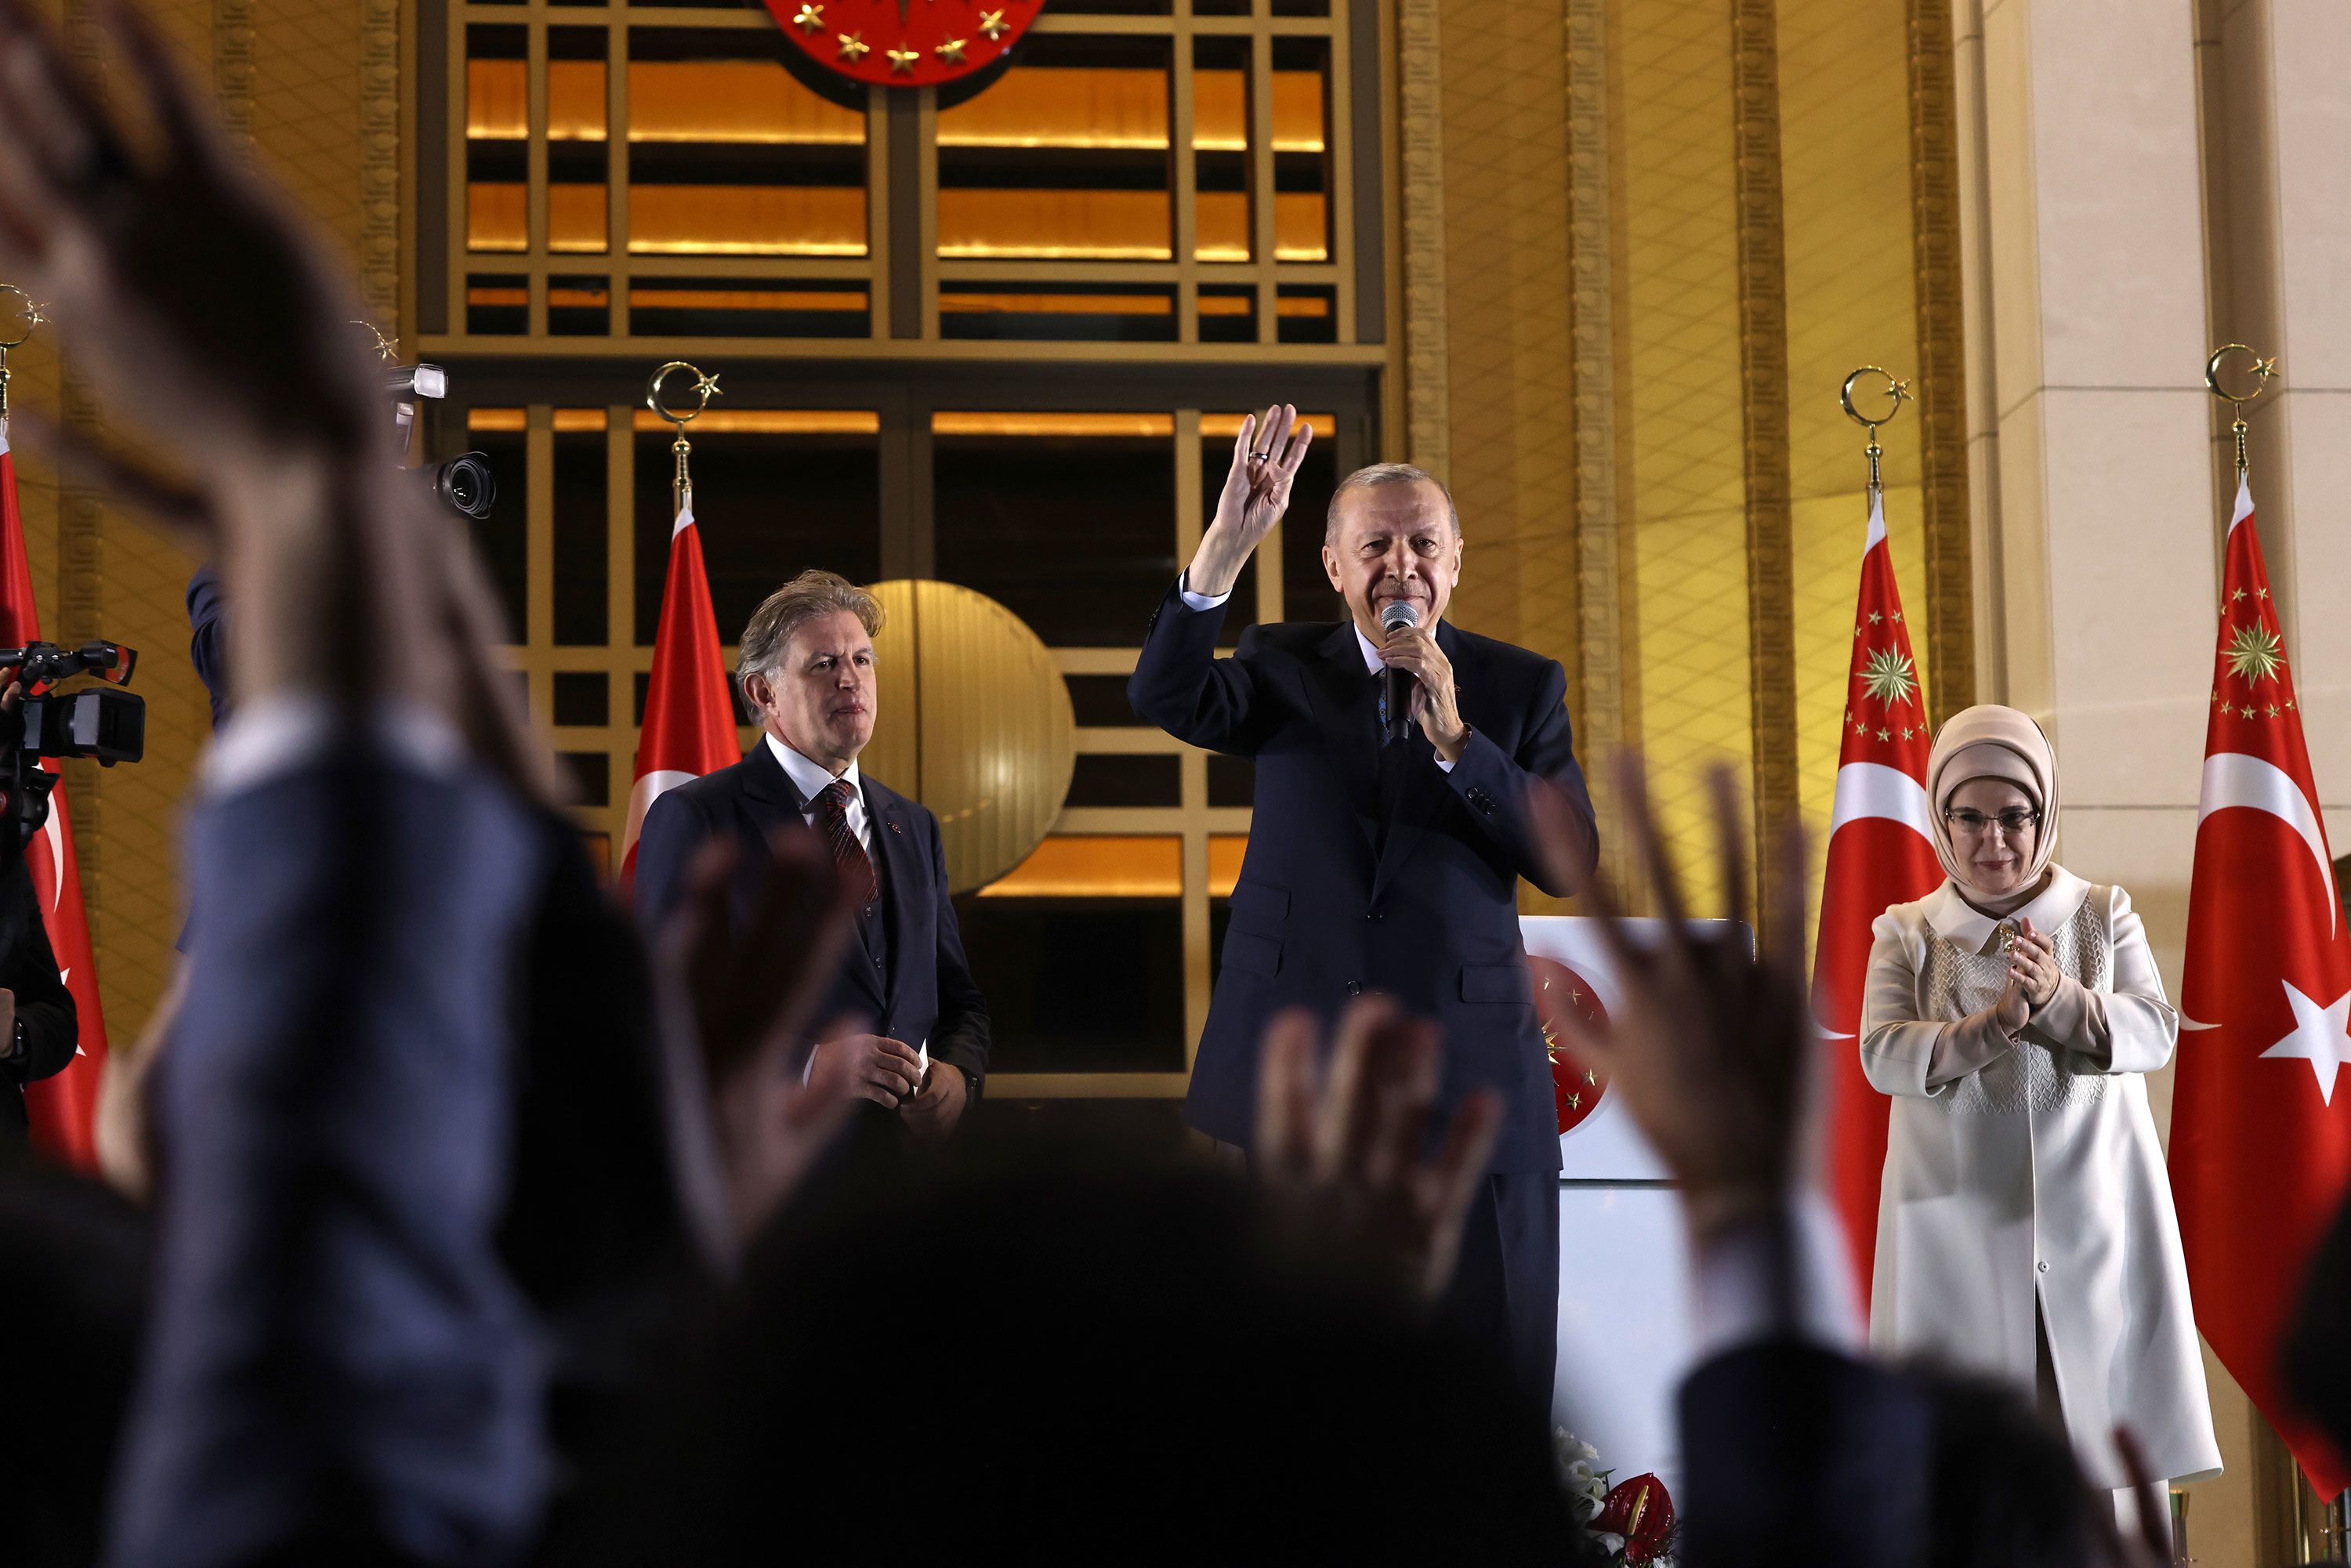 Erdoğan wins the devout Muslim women's vote for president 